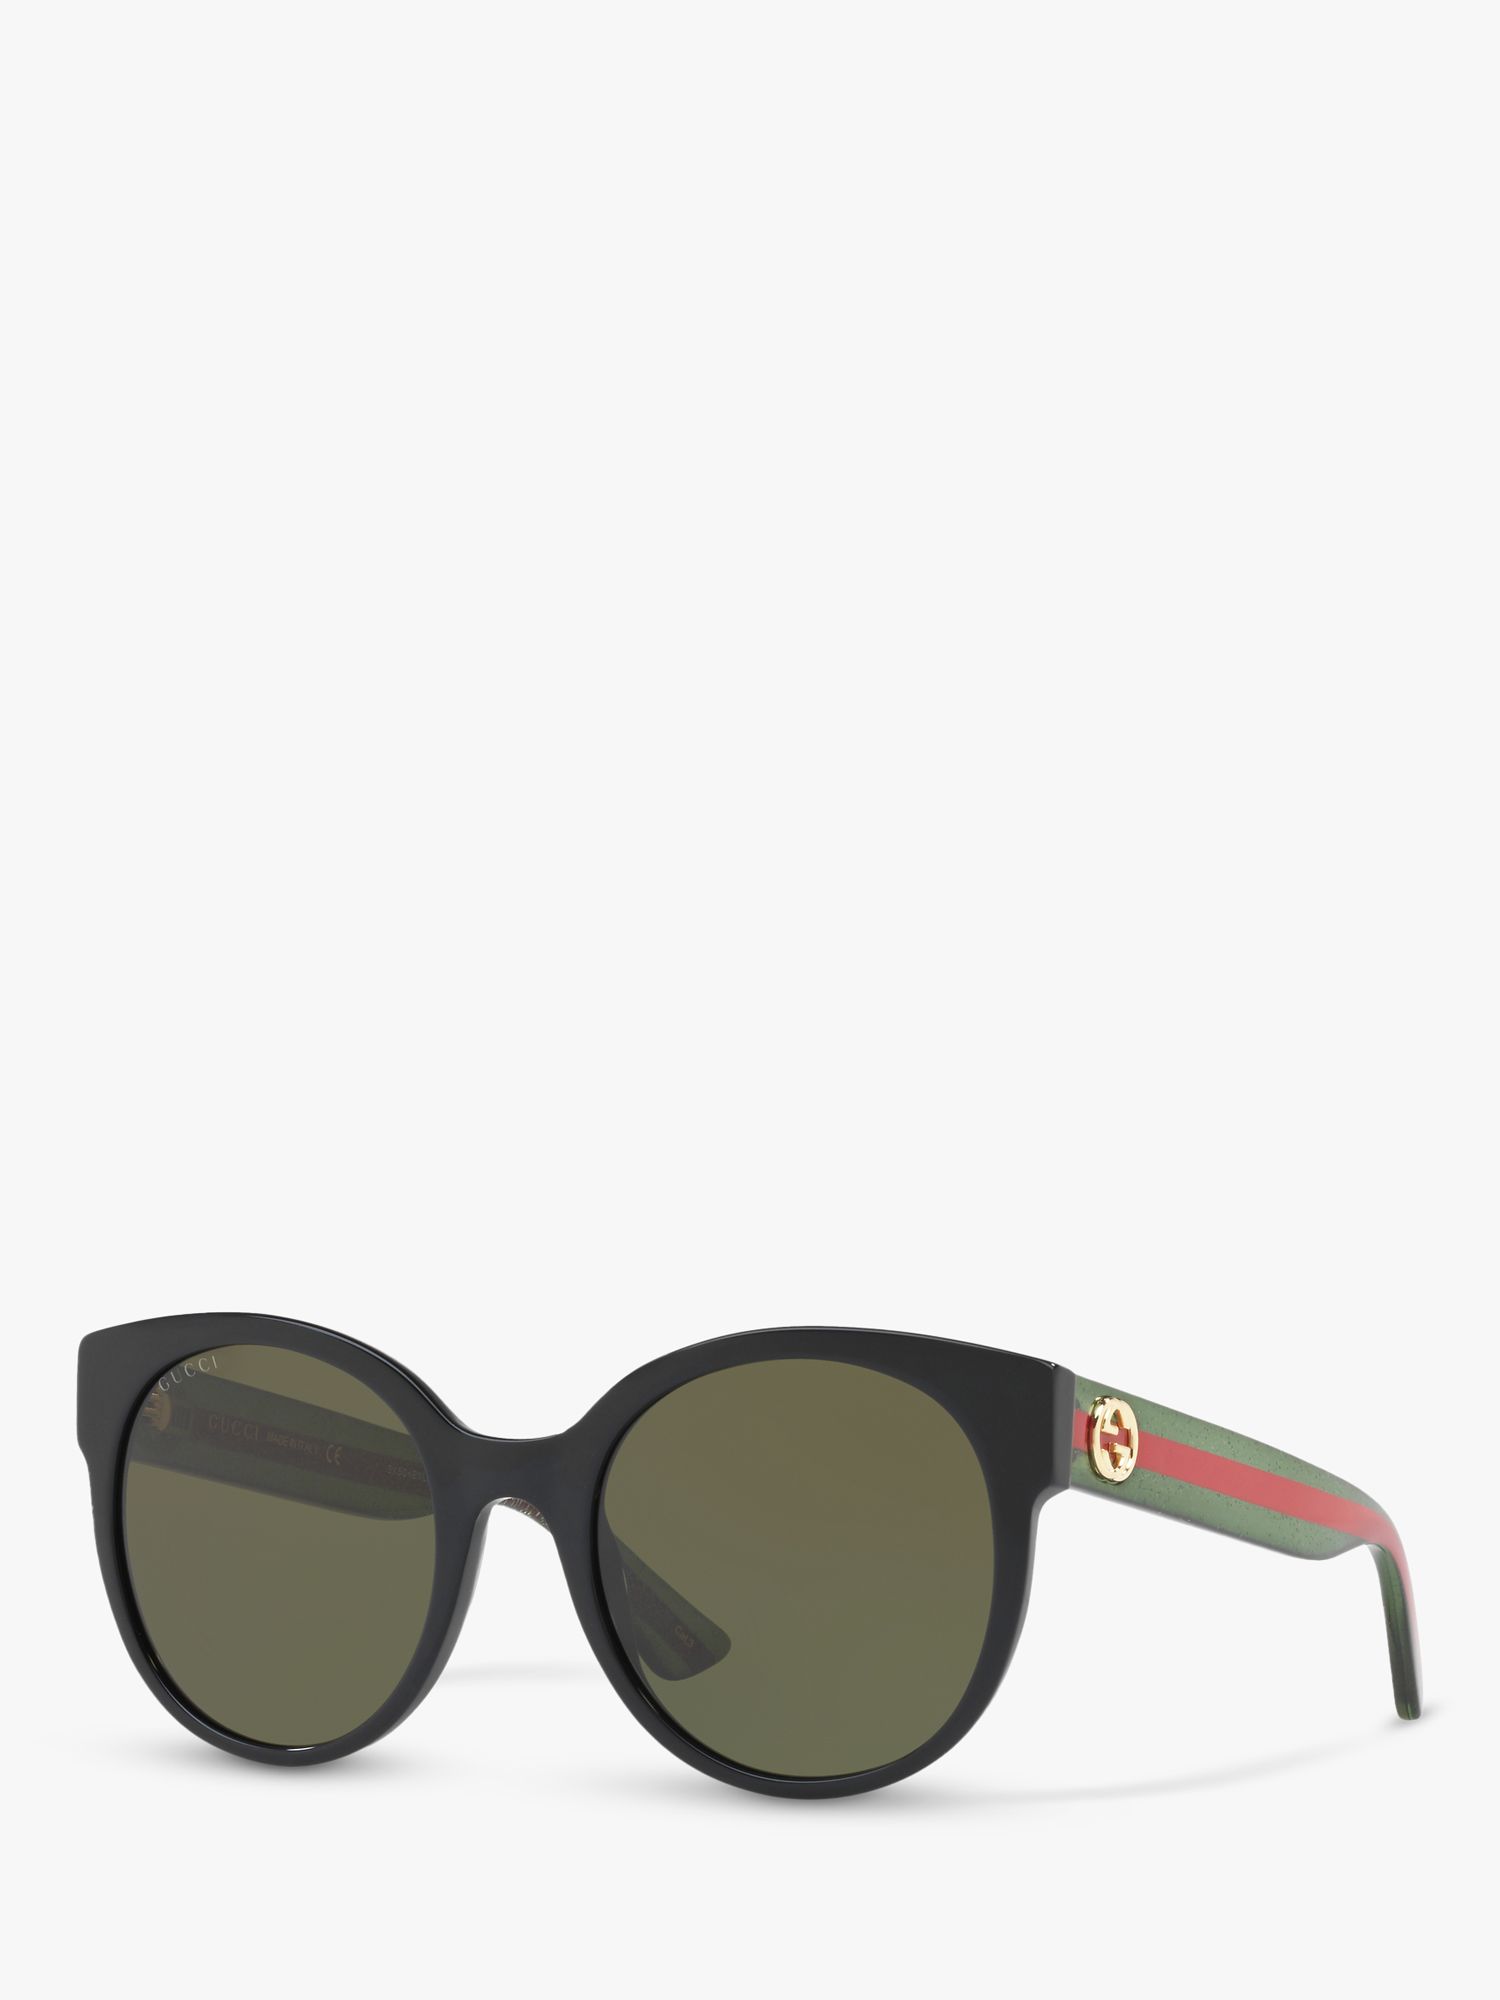 Женские круглые солнцезащитные очки Gucci GG0035SN, черные/зеленые